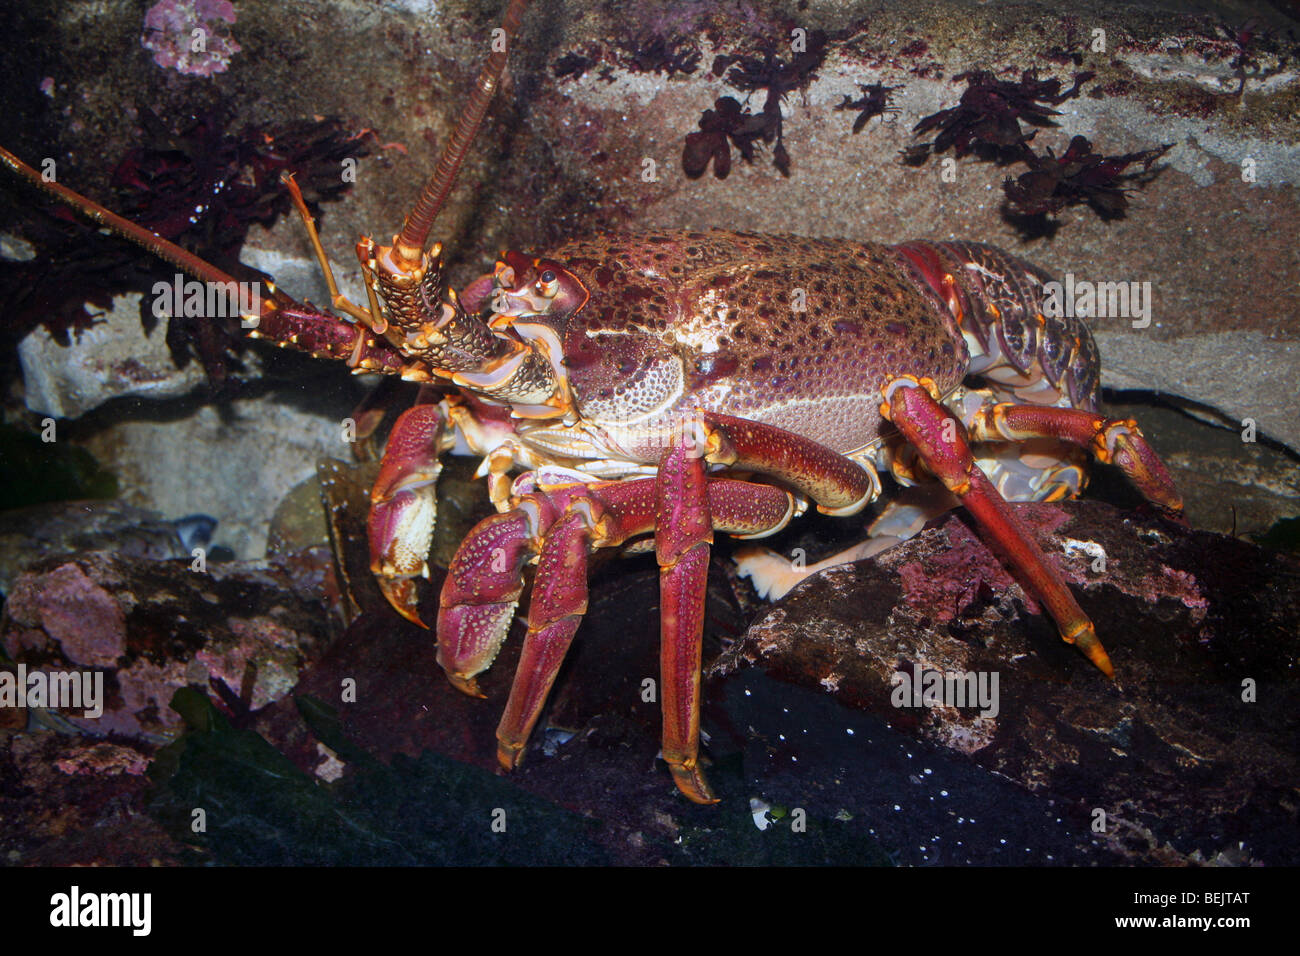 Côte ouest la langouste Jasus lalandii prises sur Two Oceans Aquarium, Cape Town, Afrique du Sud Banque D'Images